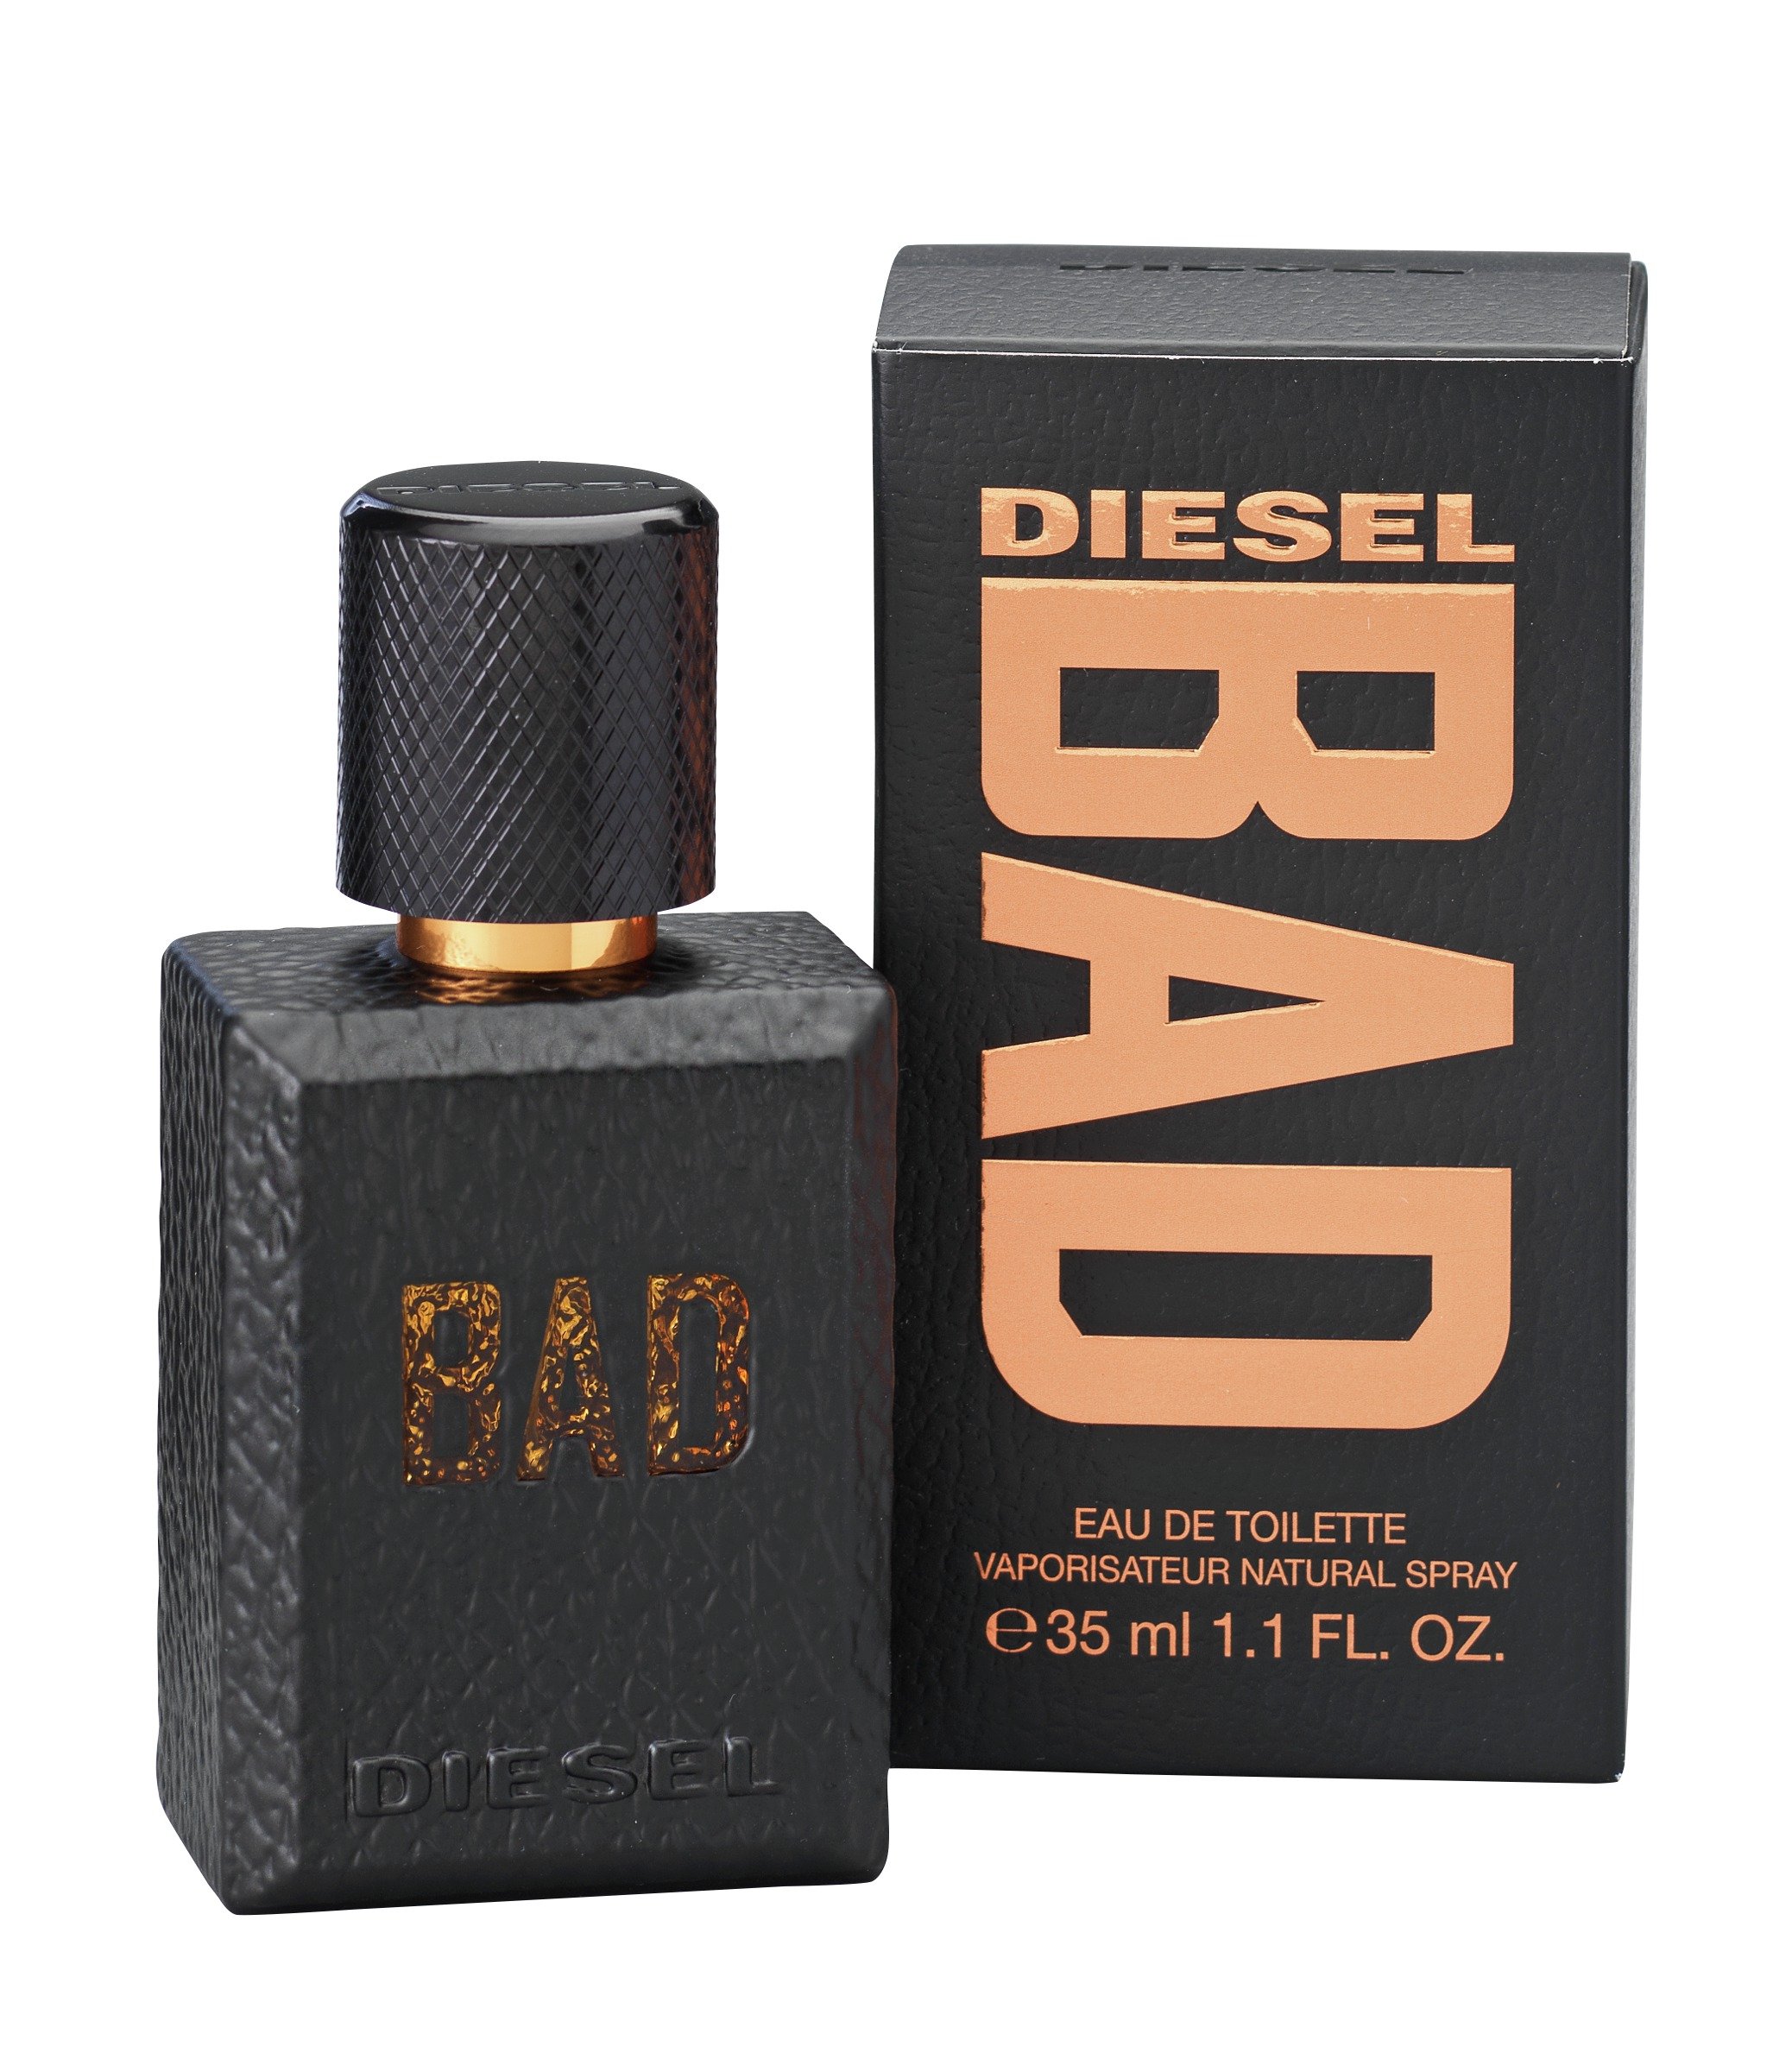 Diesel Bad Eau de Toilette for Men - 35ml